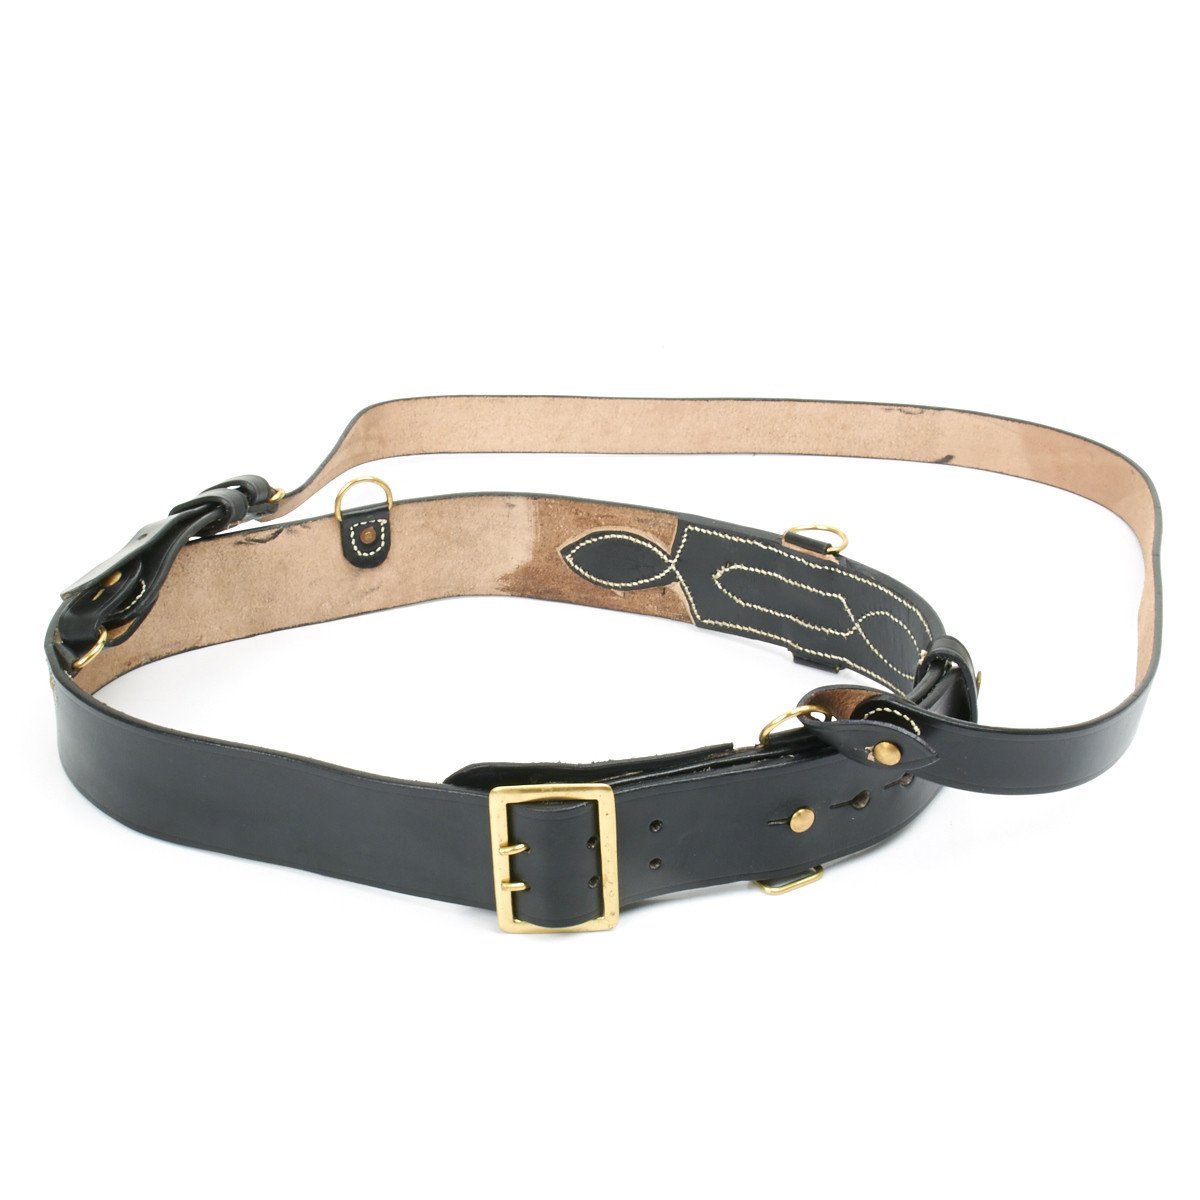 Sam Browne Belt With Shoulder Strap (Size - 90cm to 120cm)